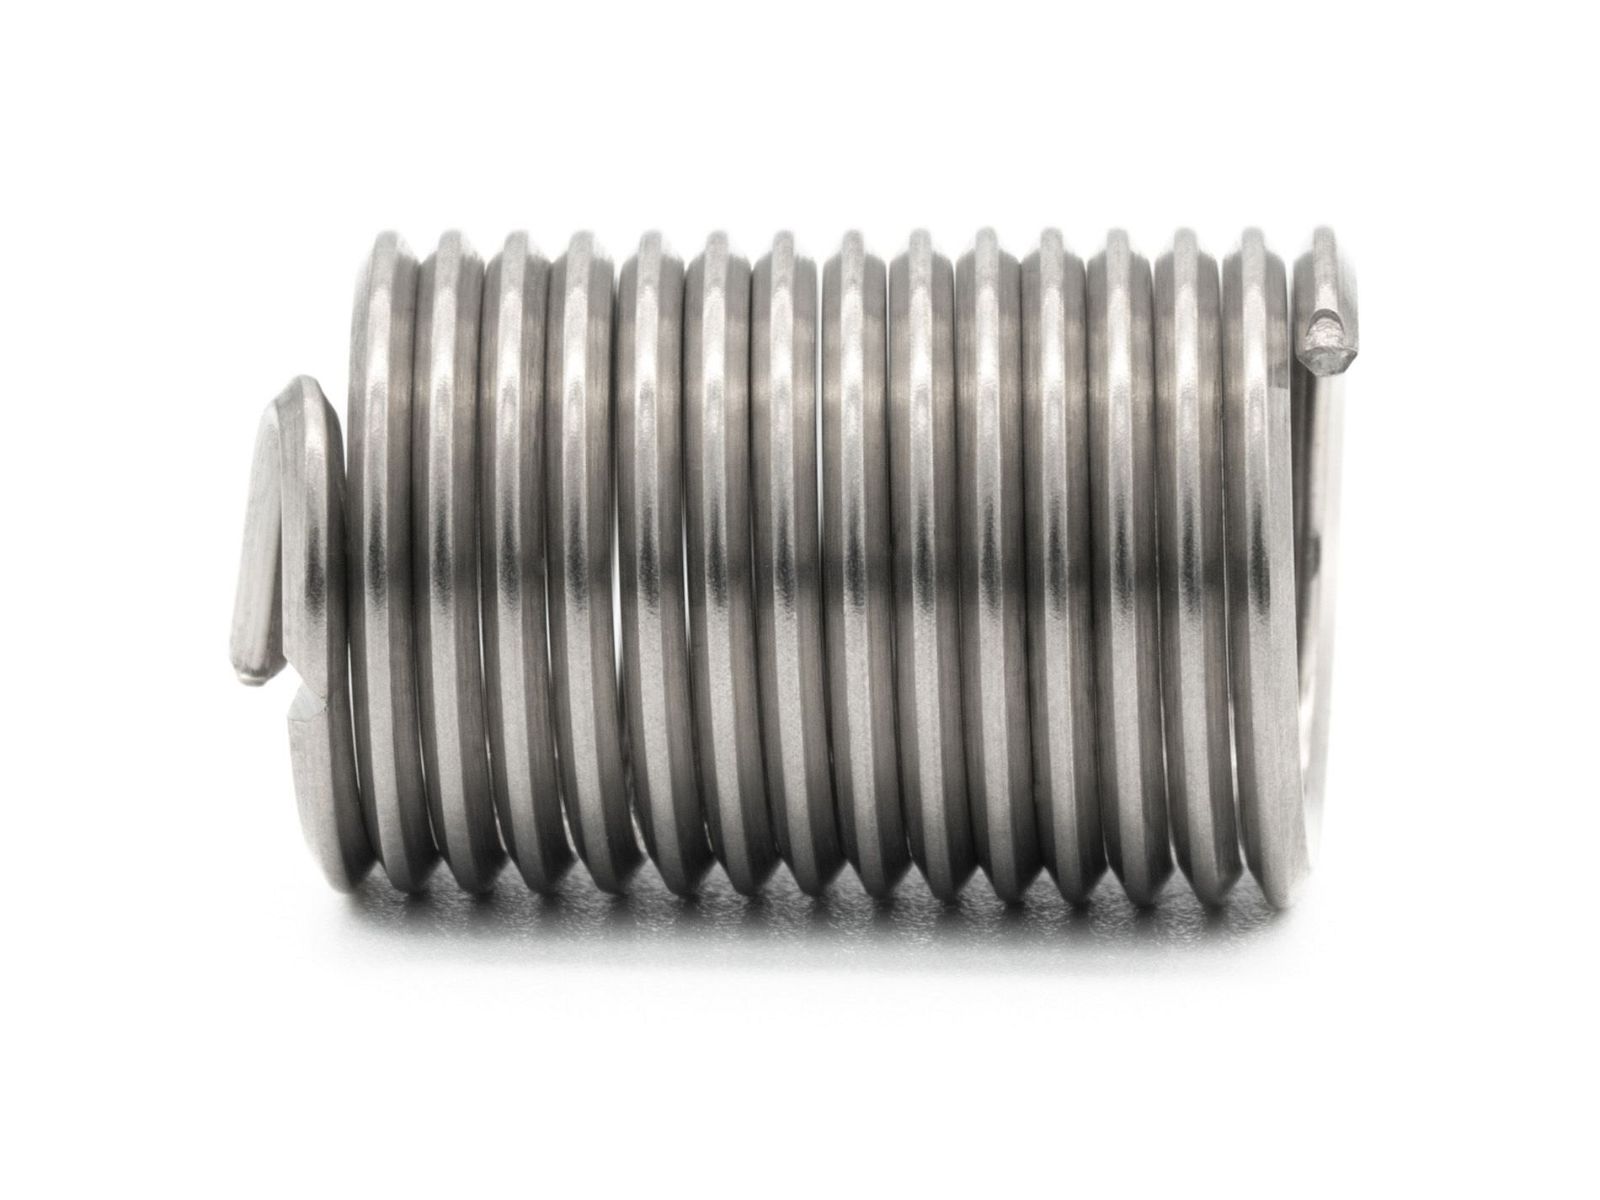 BaerCoil Wire Thread Inserts UNF 3/4 x 16 - 2.5 D (47.63 mm) - free running - 10 pcs.